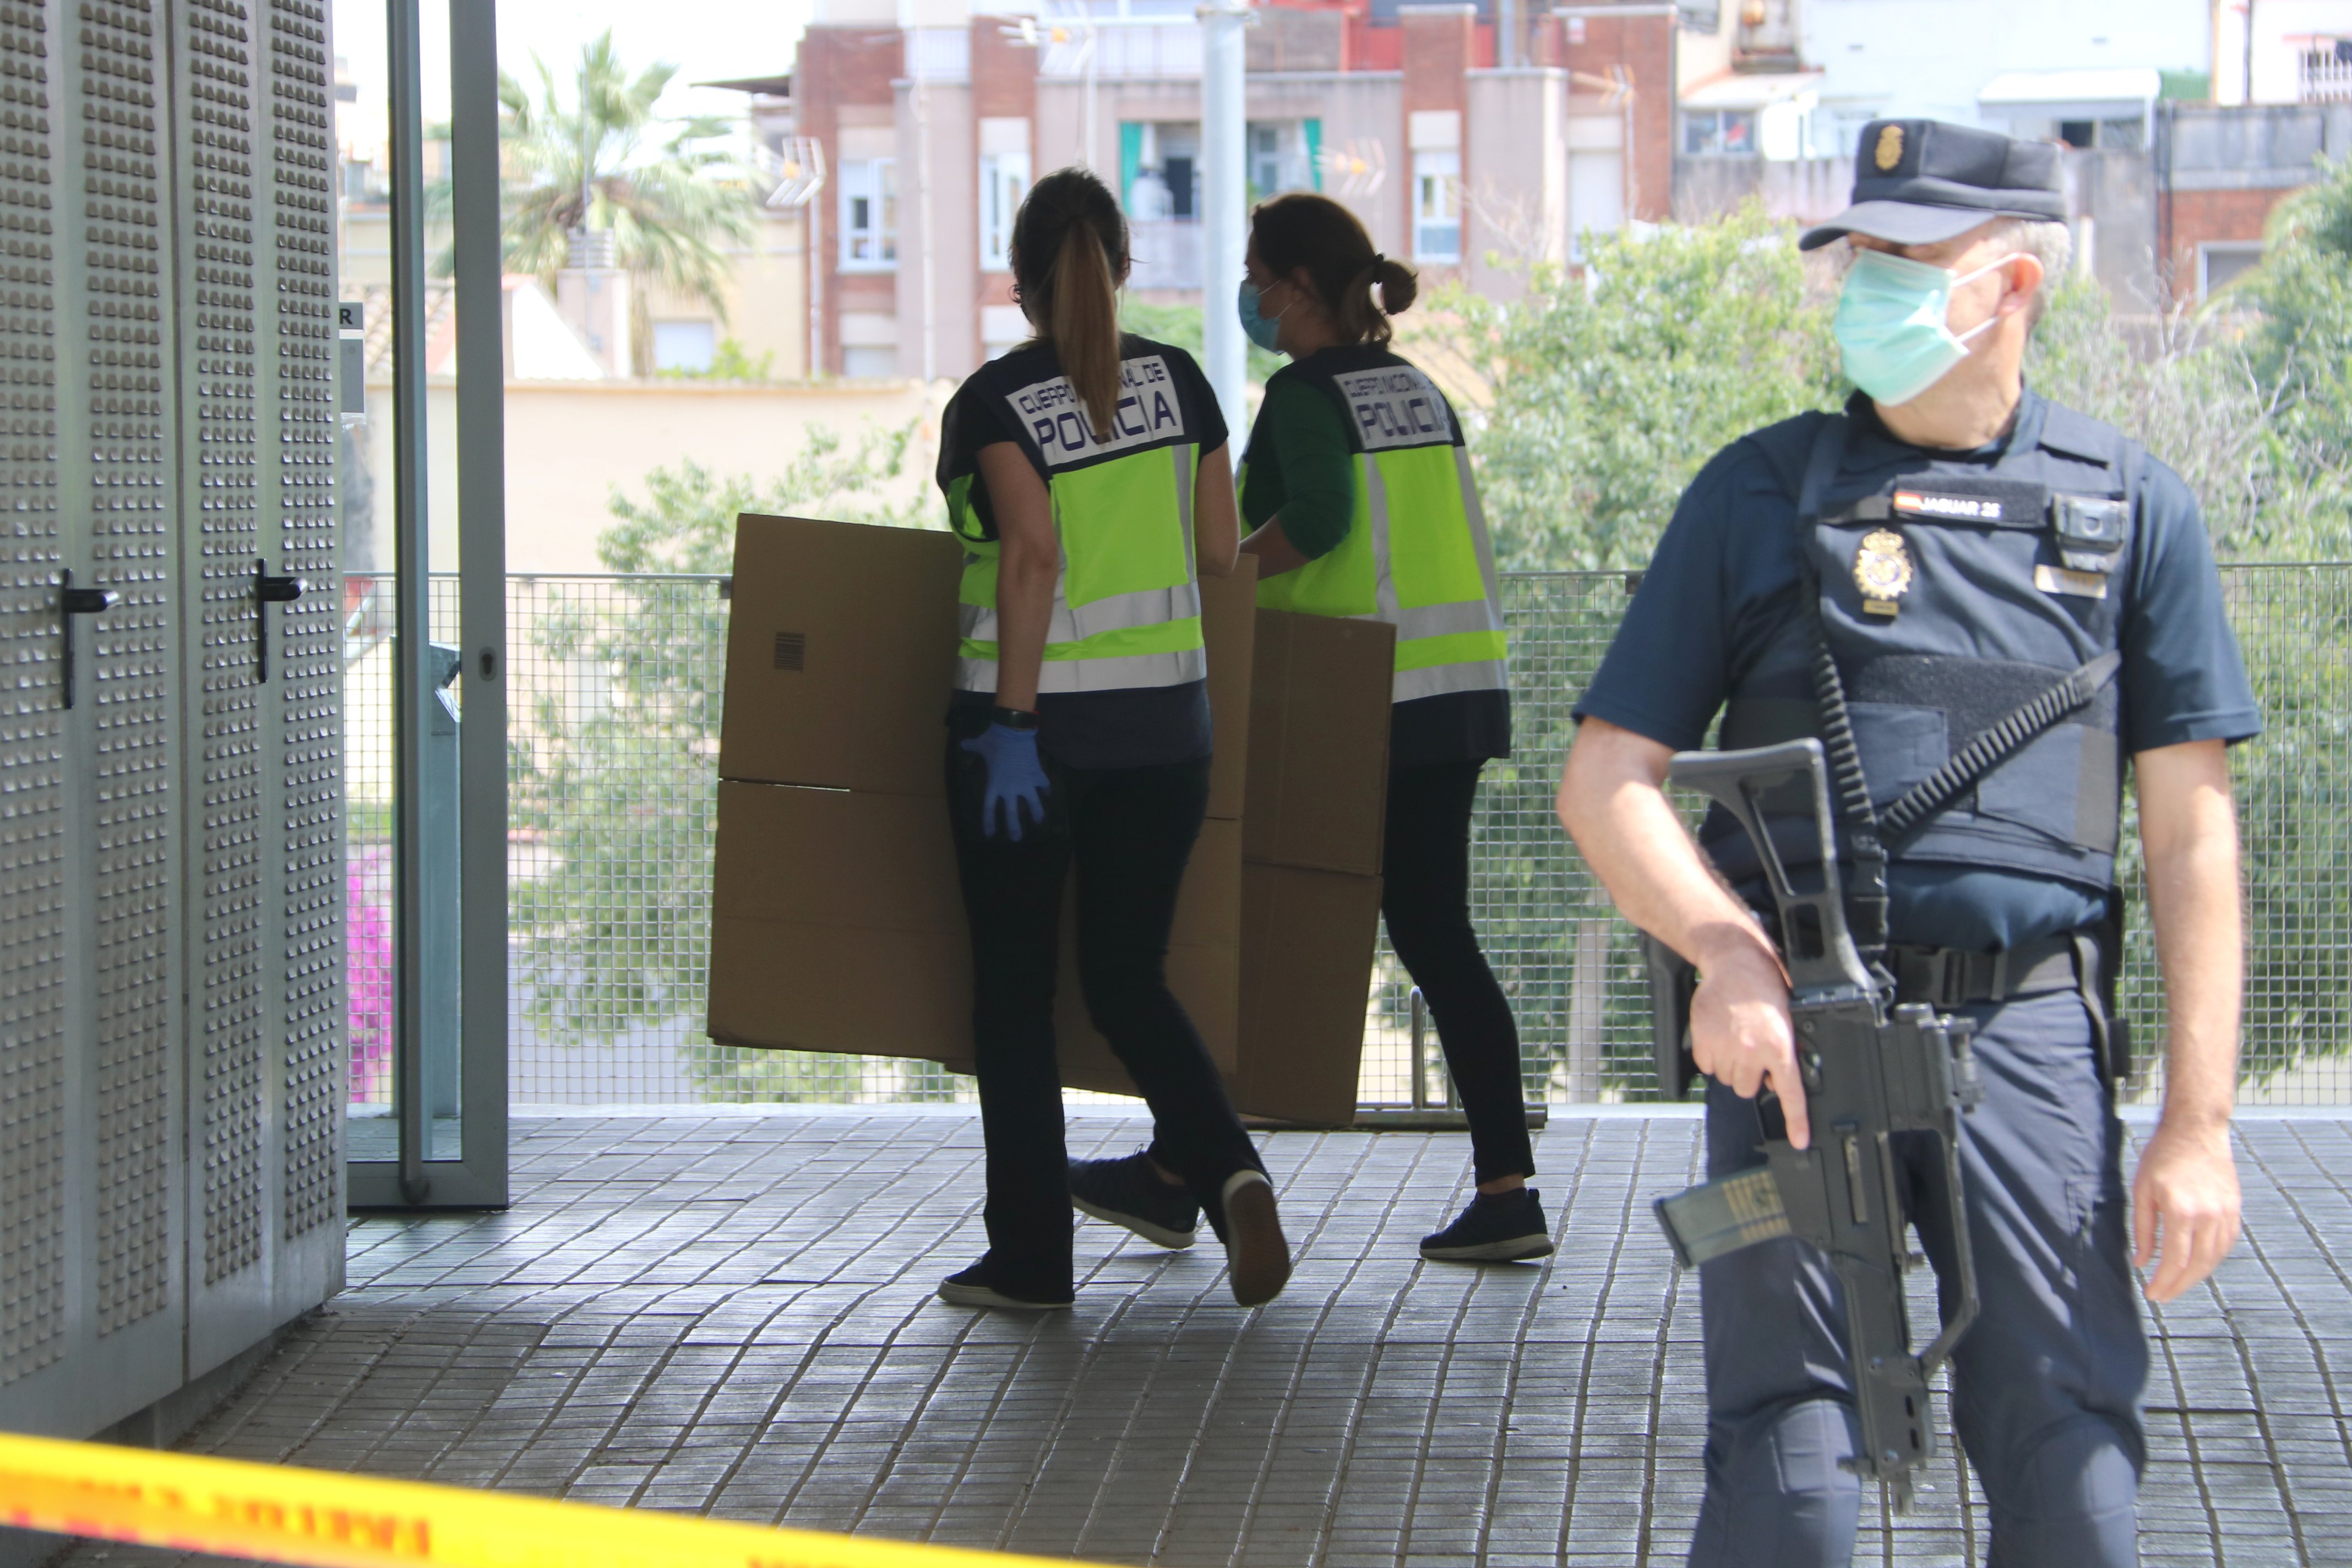 Escorcoll policial a una dependència de l'ajuntament de l'Hospitalet: 1 detingut